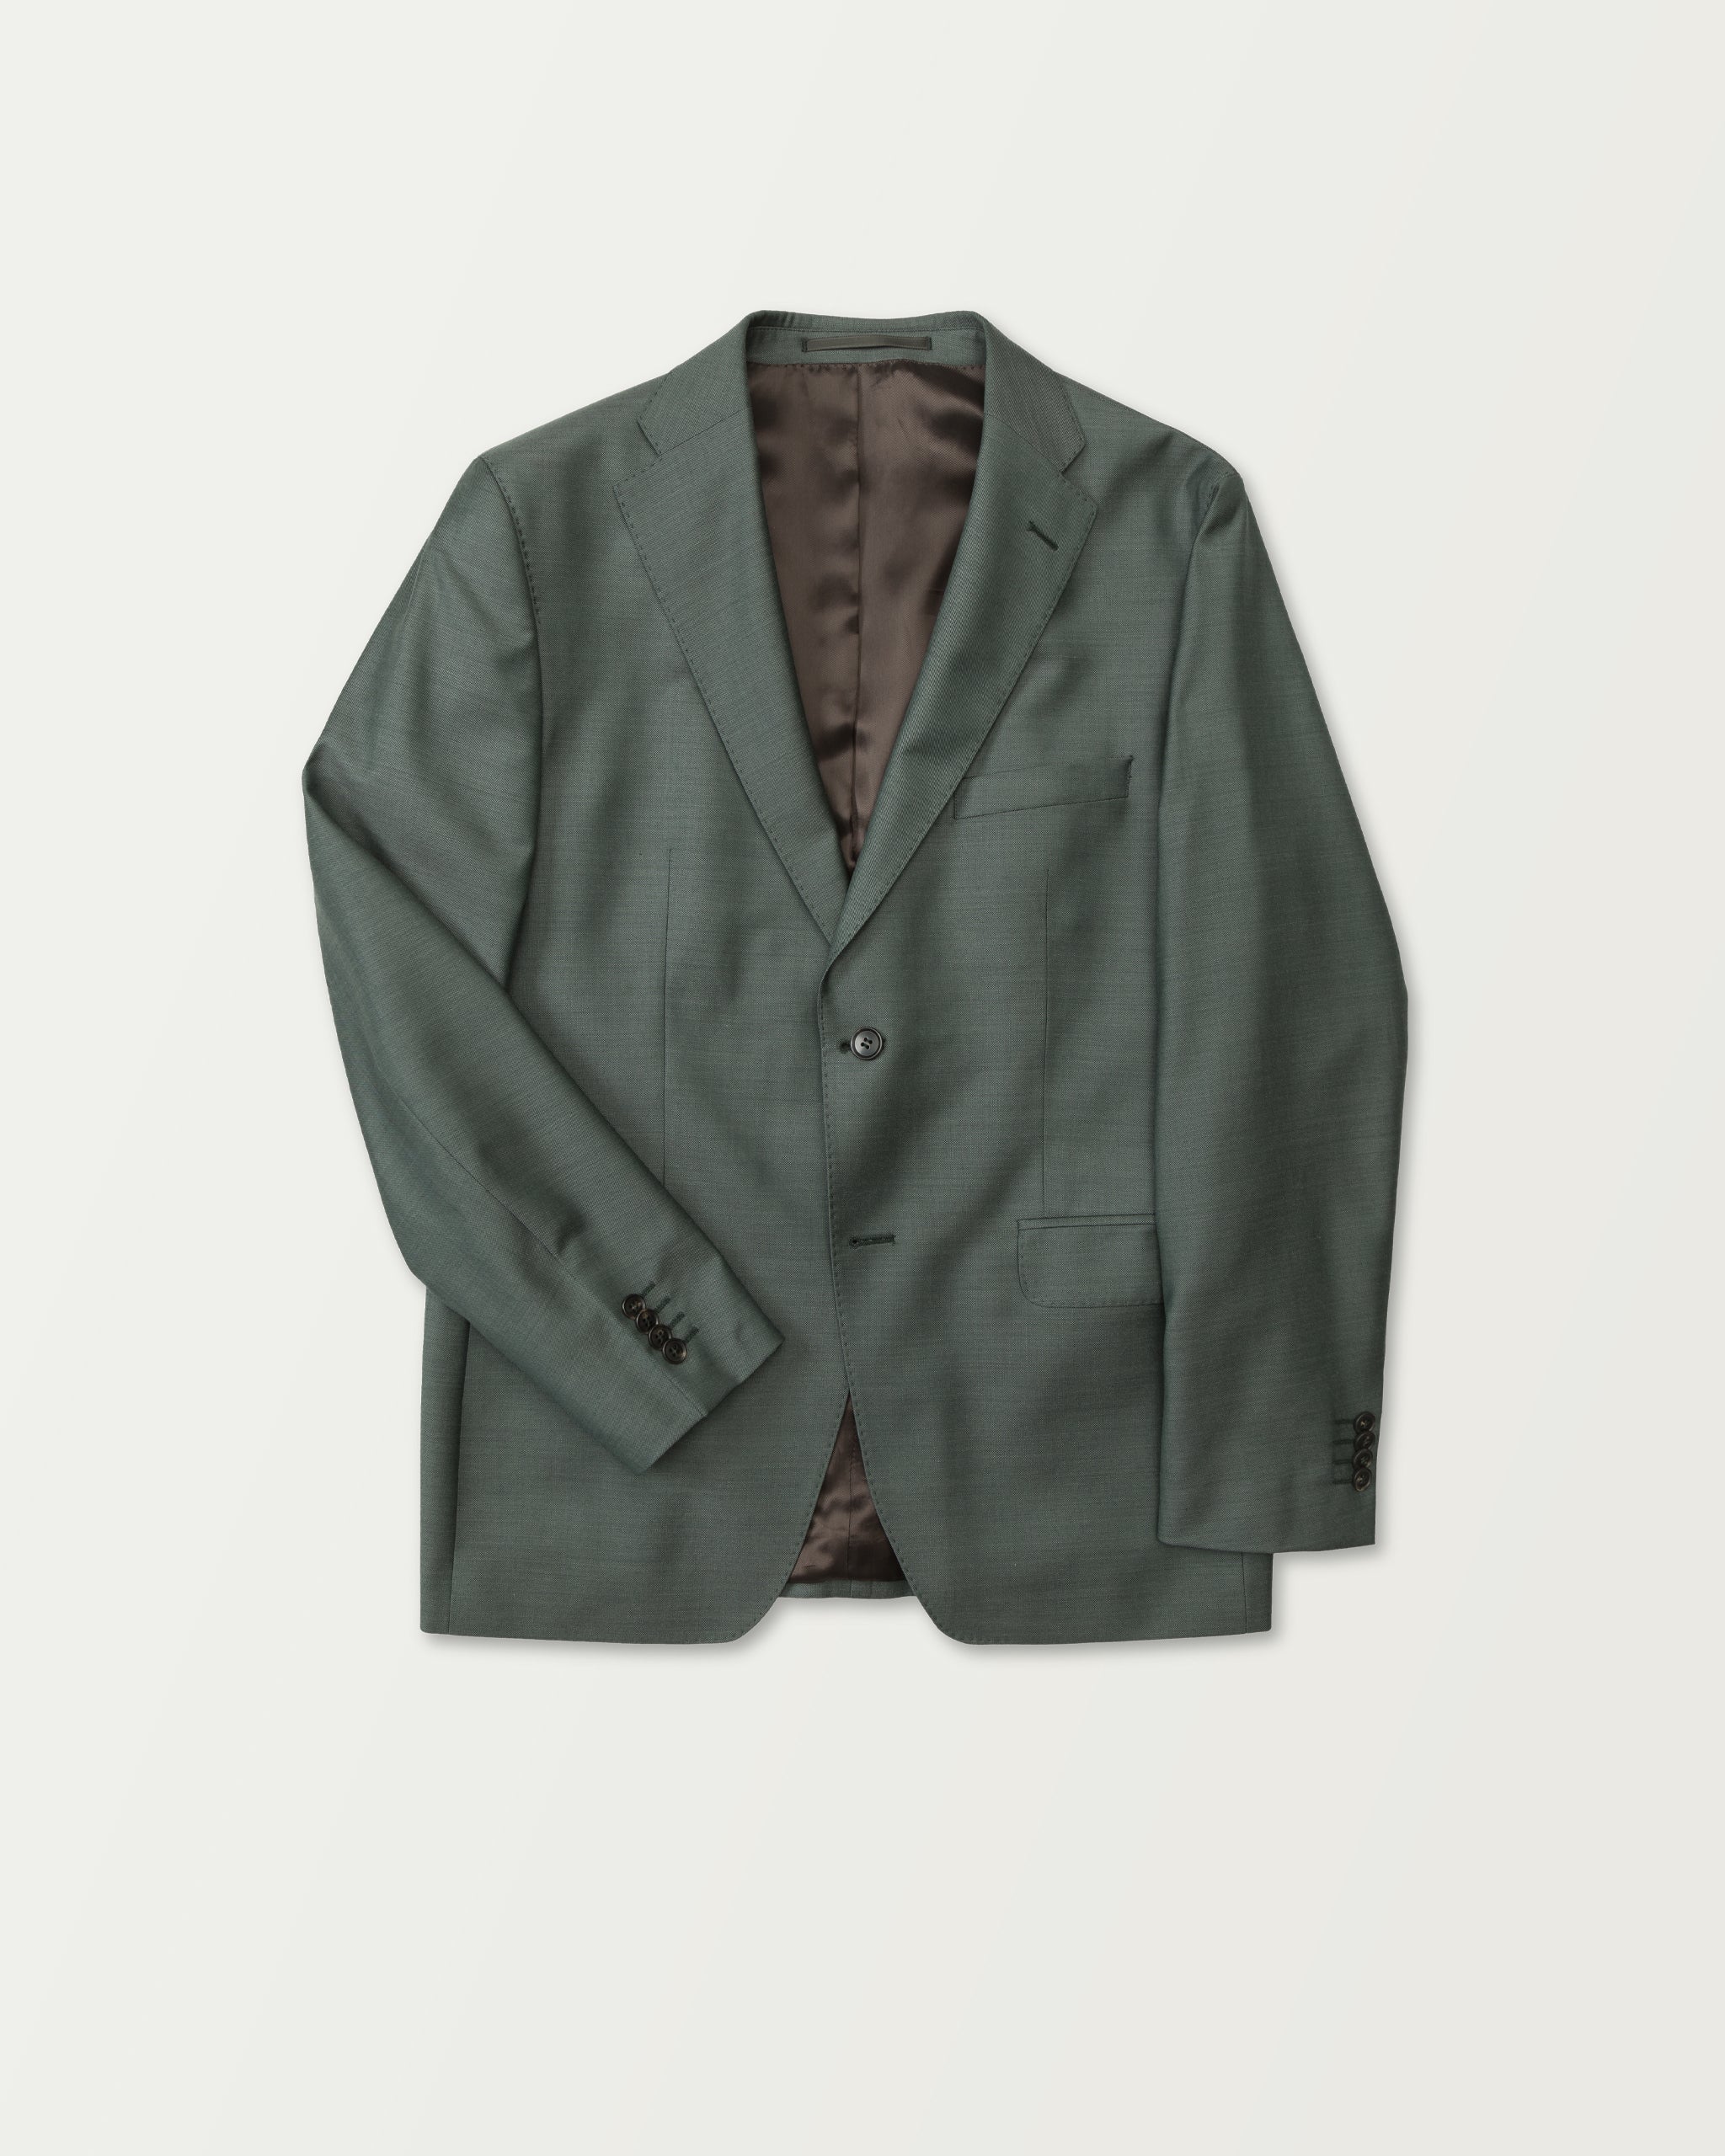 Turo - Green Premium Wool Suit in Modern Fit Jacket